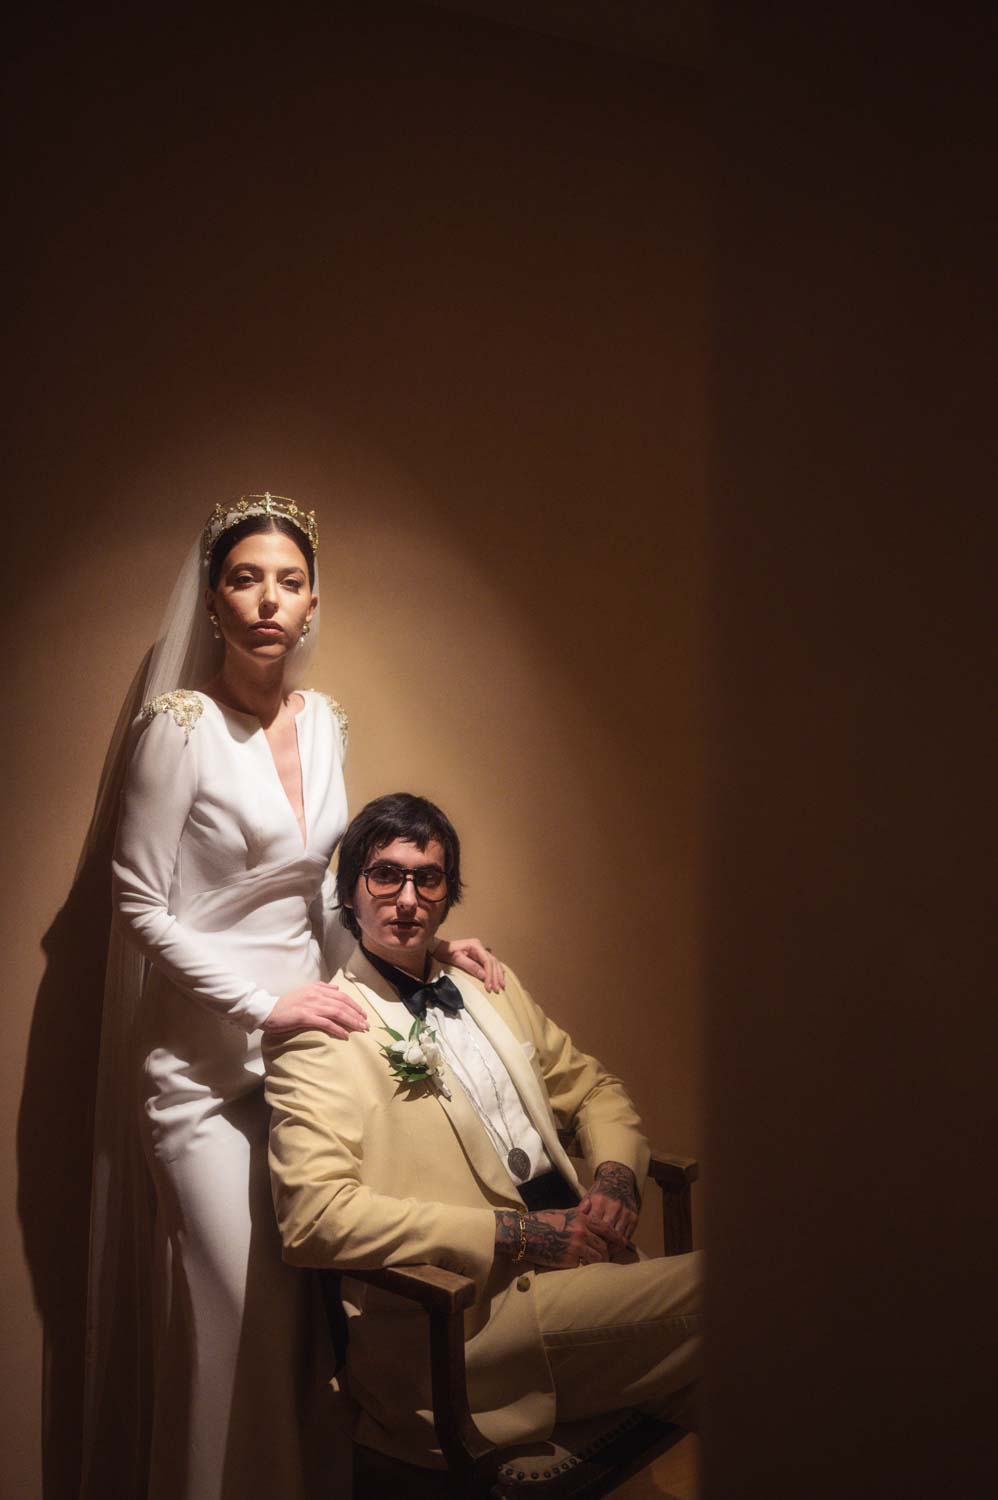 John & Denise - Καβούρι, Αττική : Real Wedding by Imagine Studio